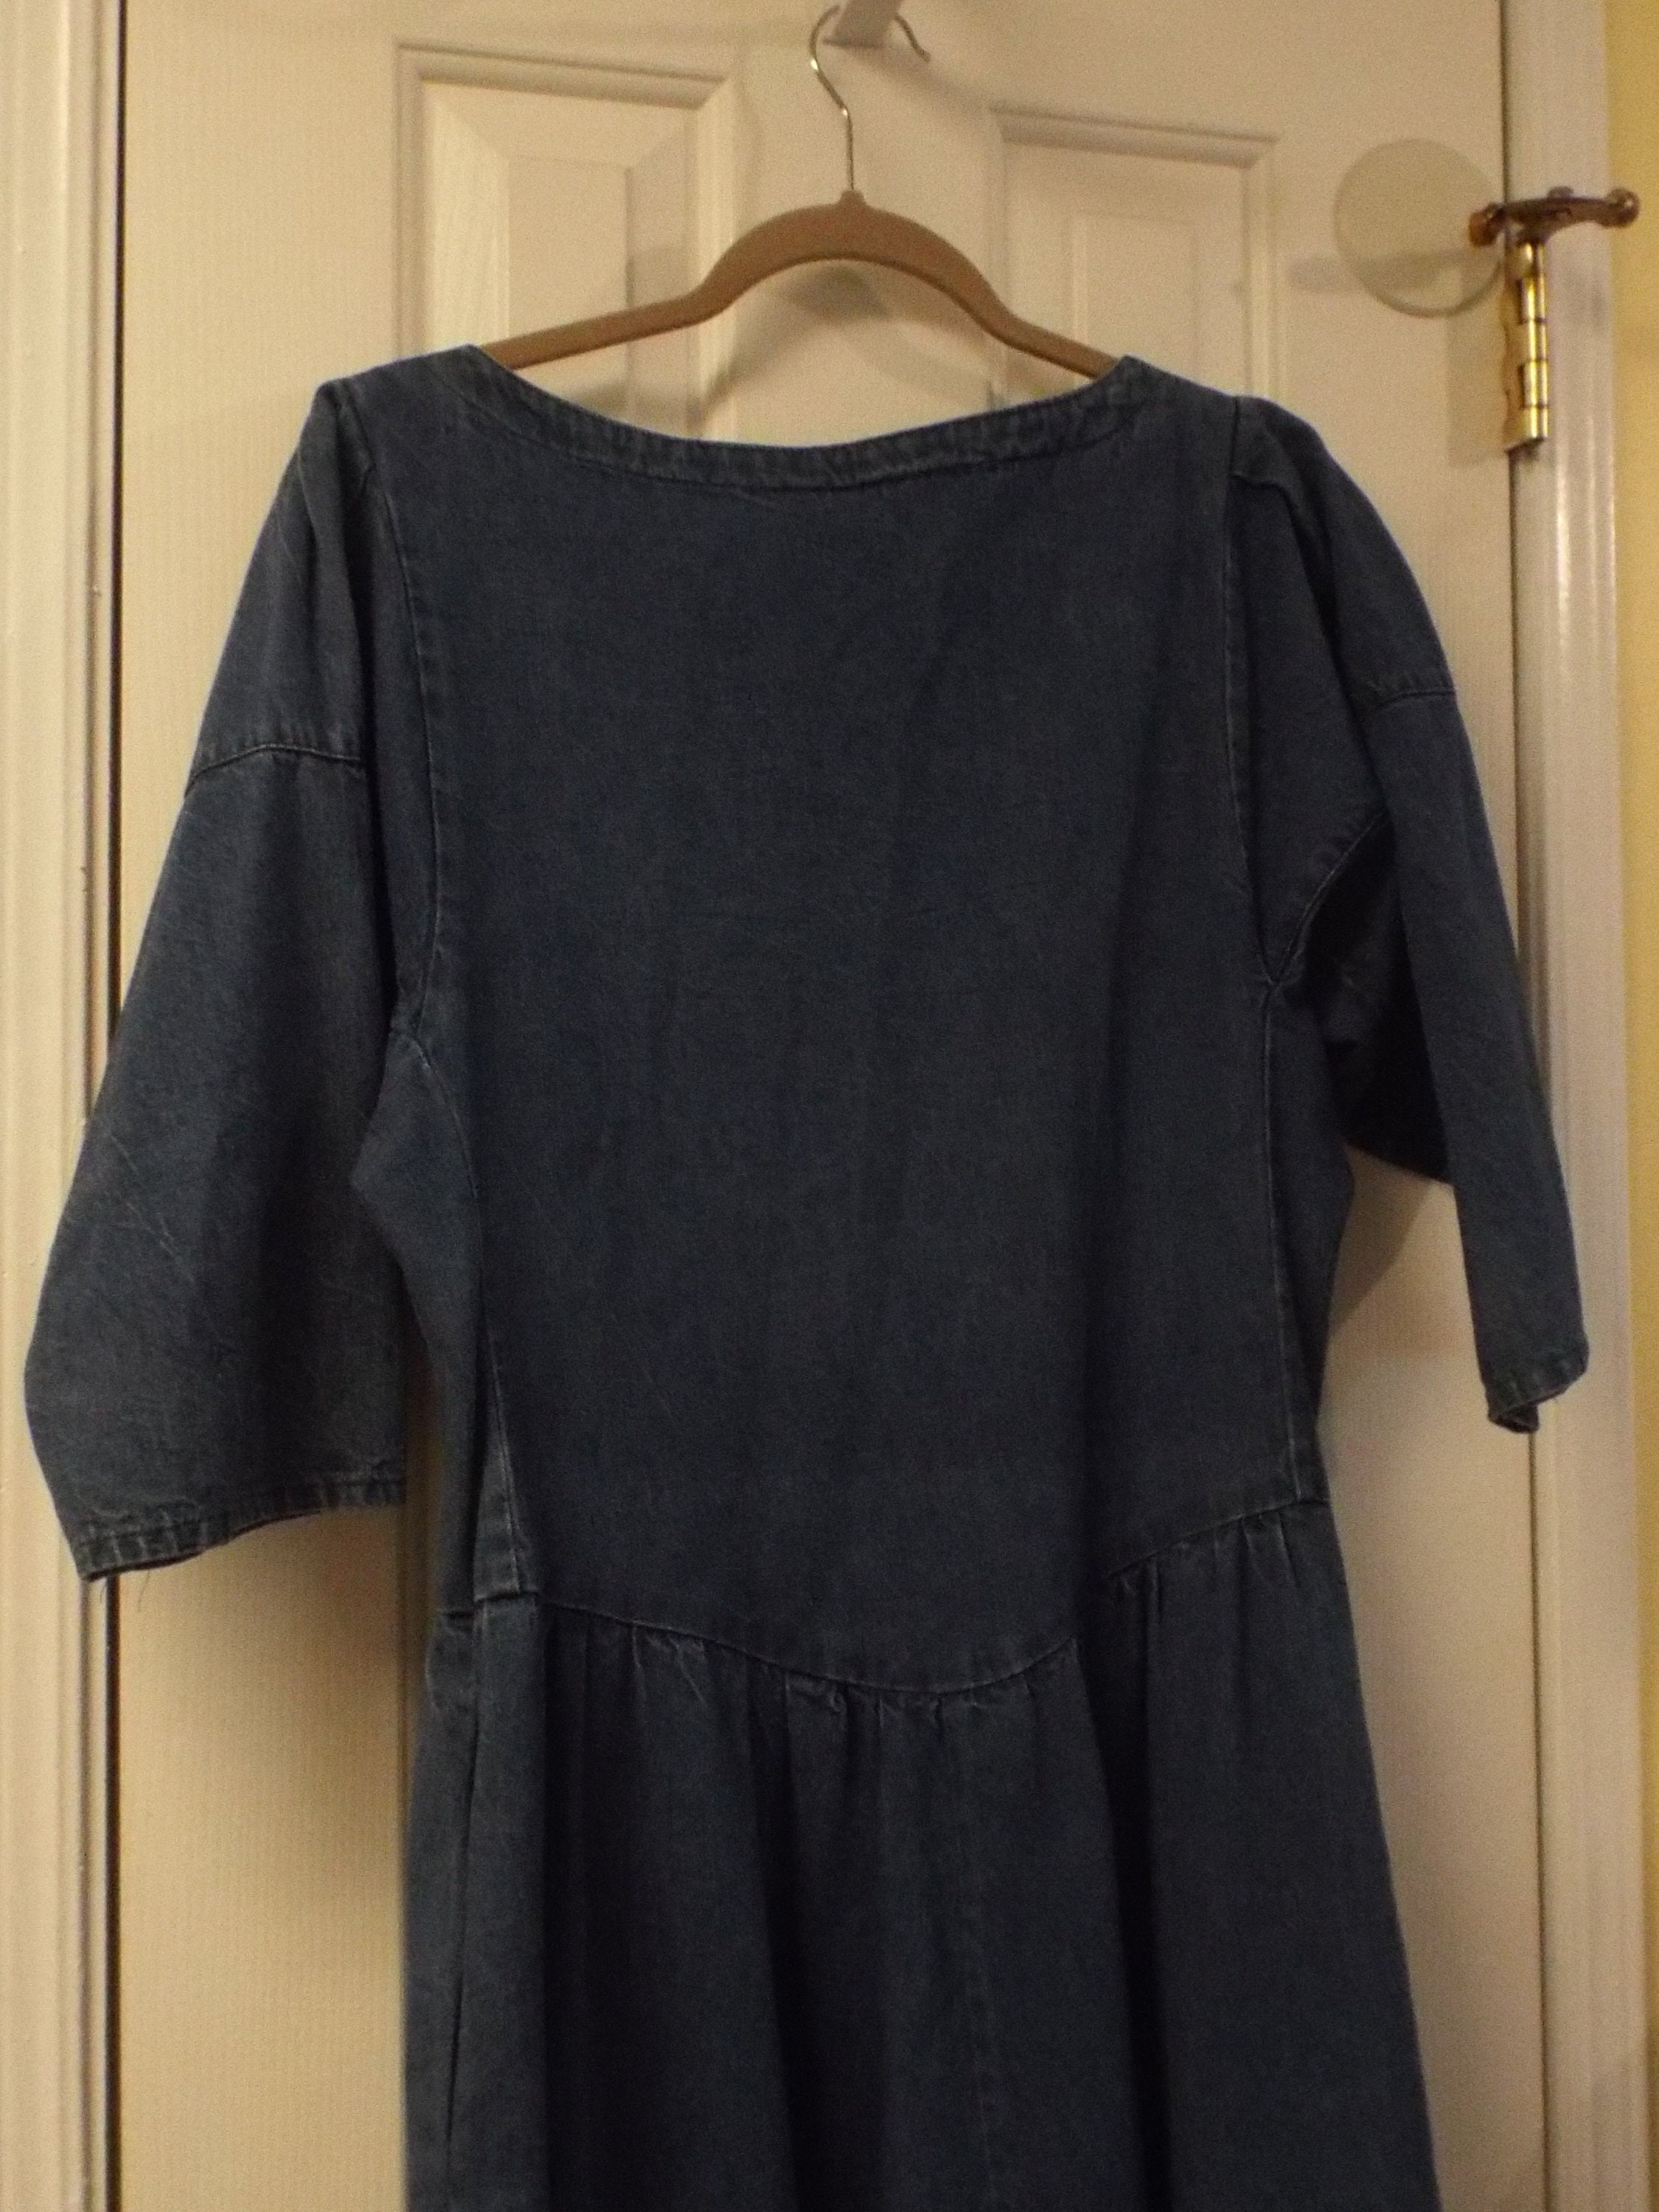 Vintage 1970s Denim Dress Women's Long Jean Dress | Etsy